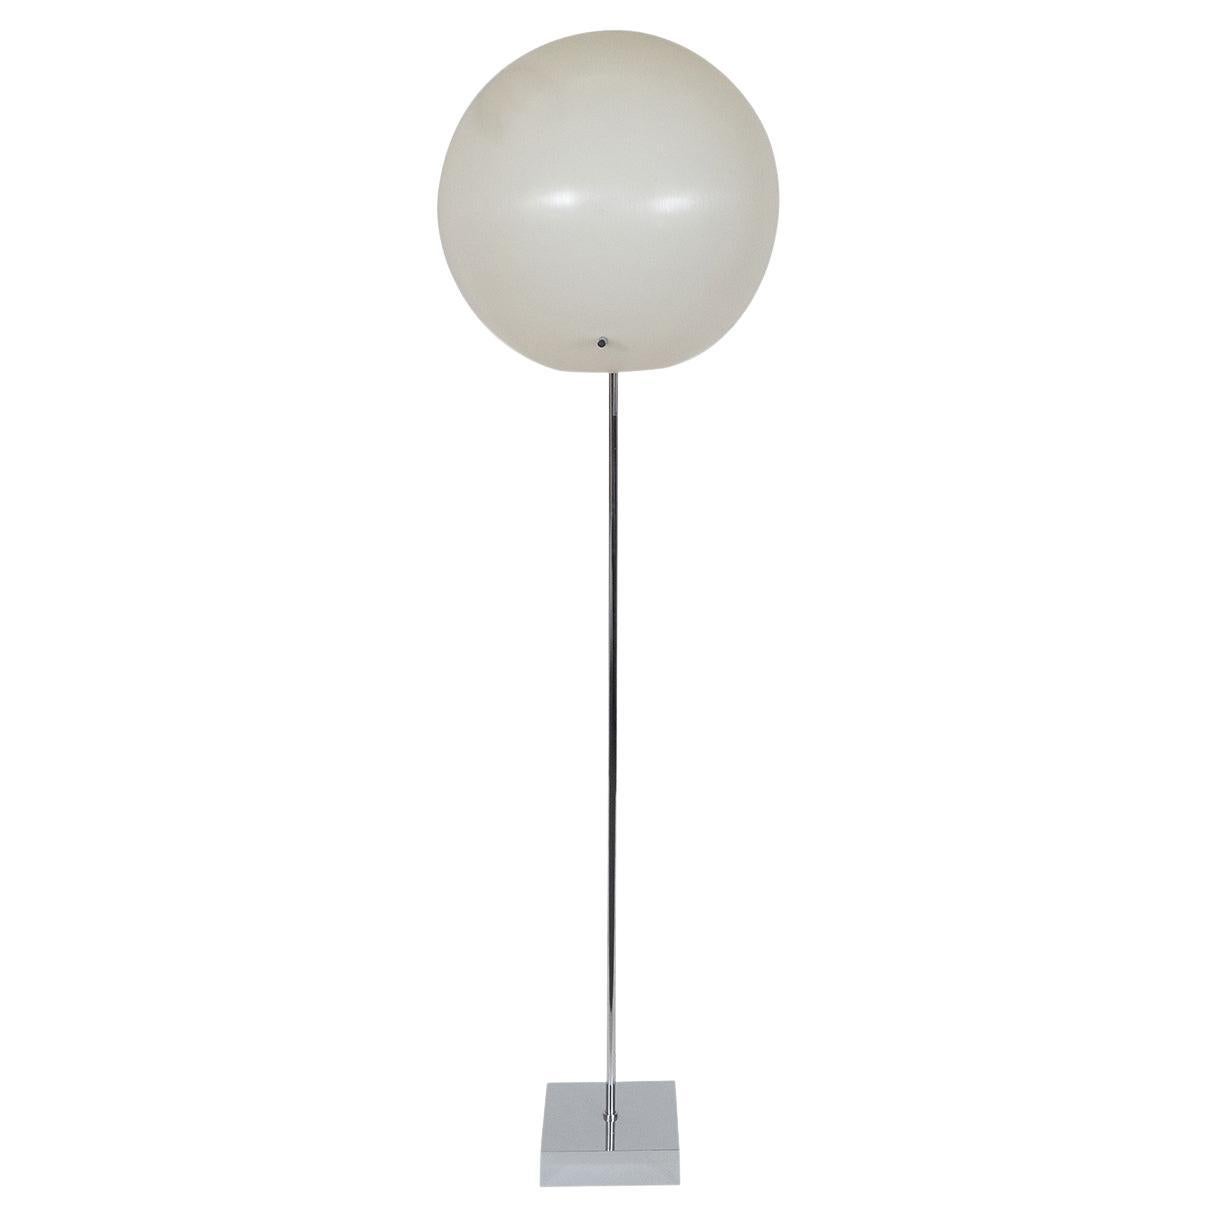 Resin "Balloon" Floor Lamp